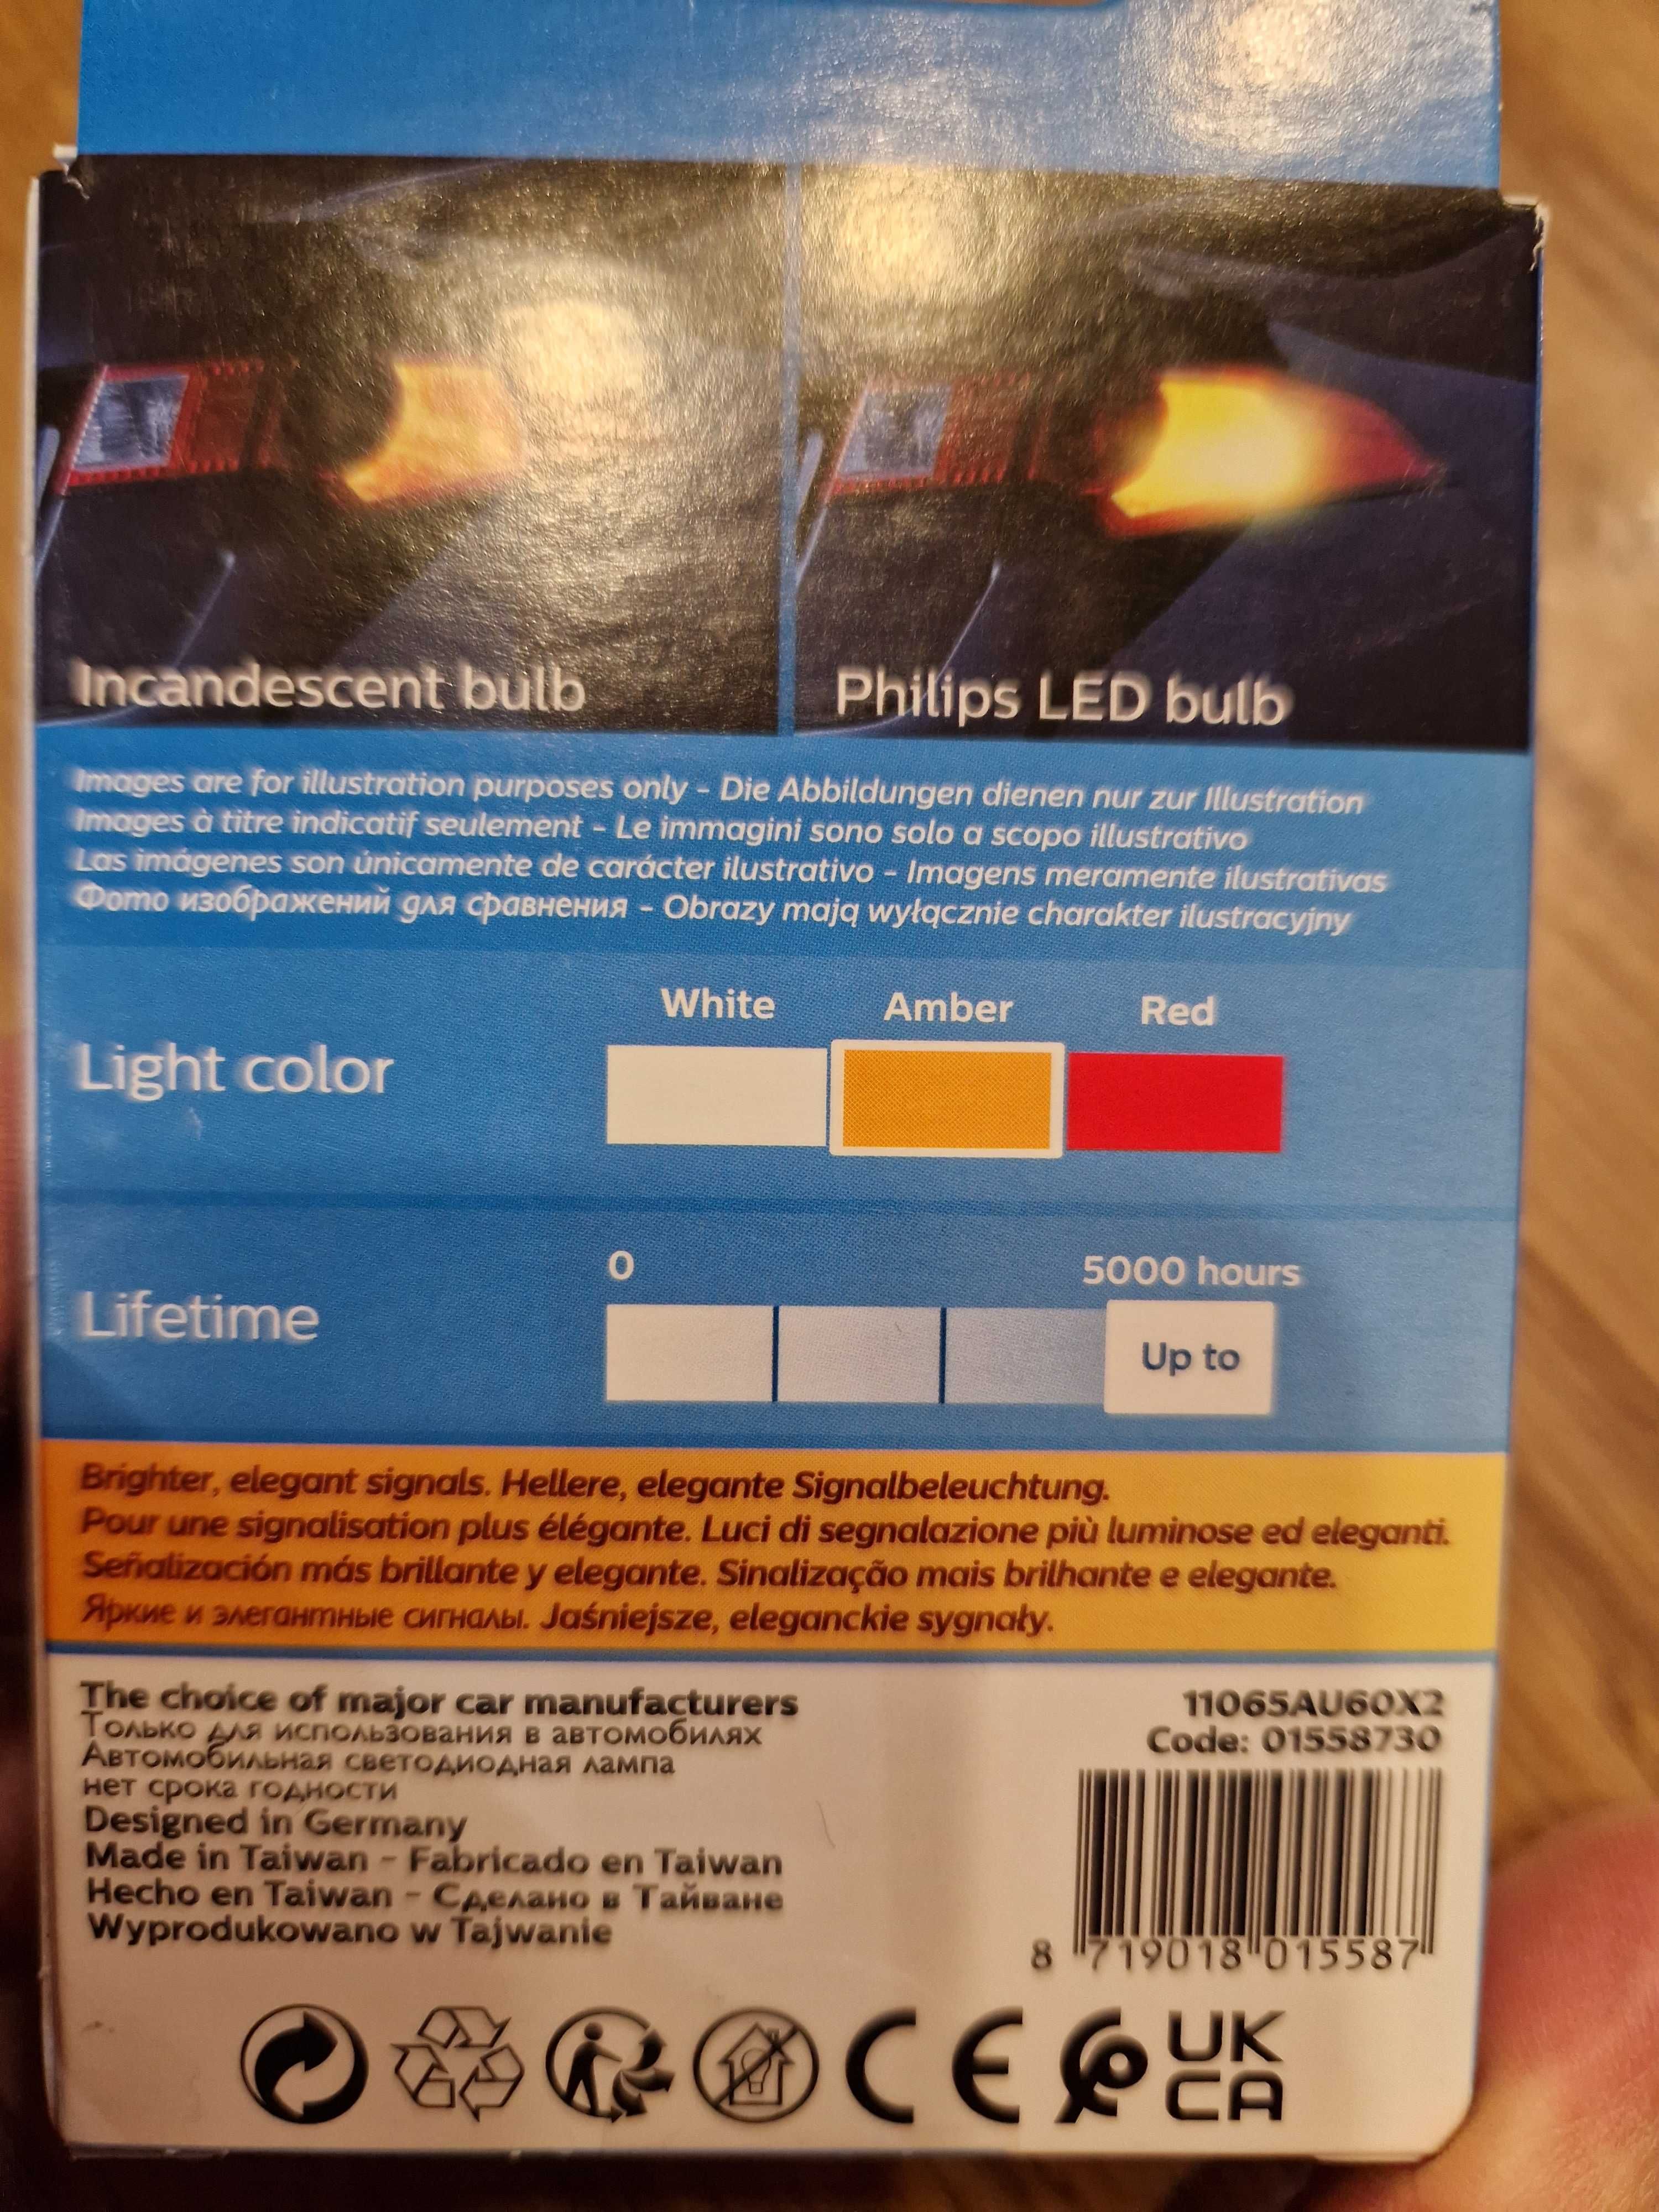 LED крушки мигачи оранжеви Philips Ultinon Pro6000